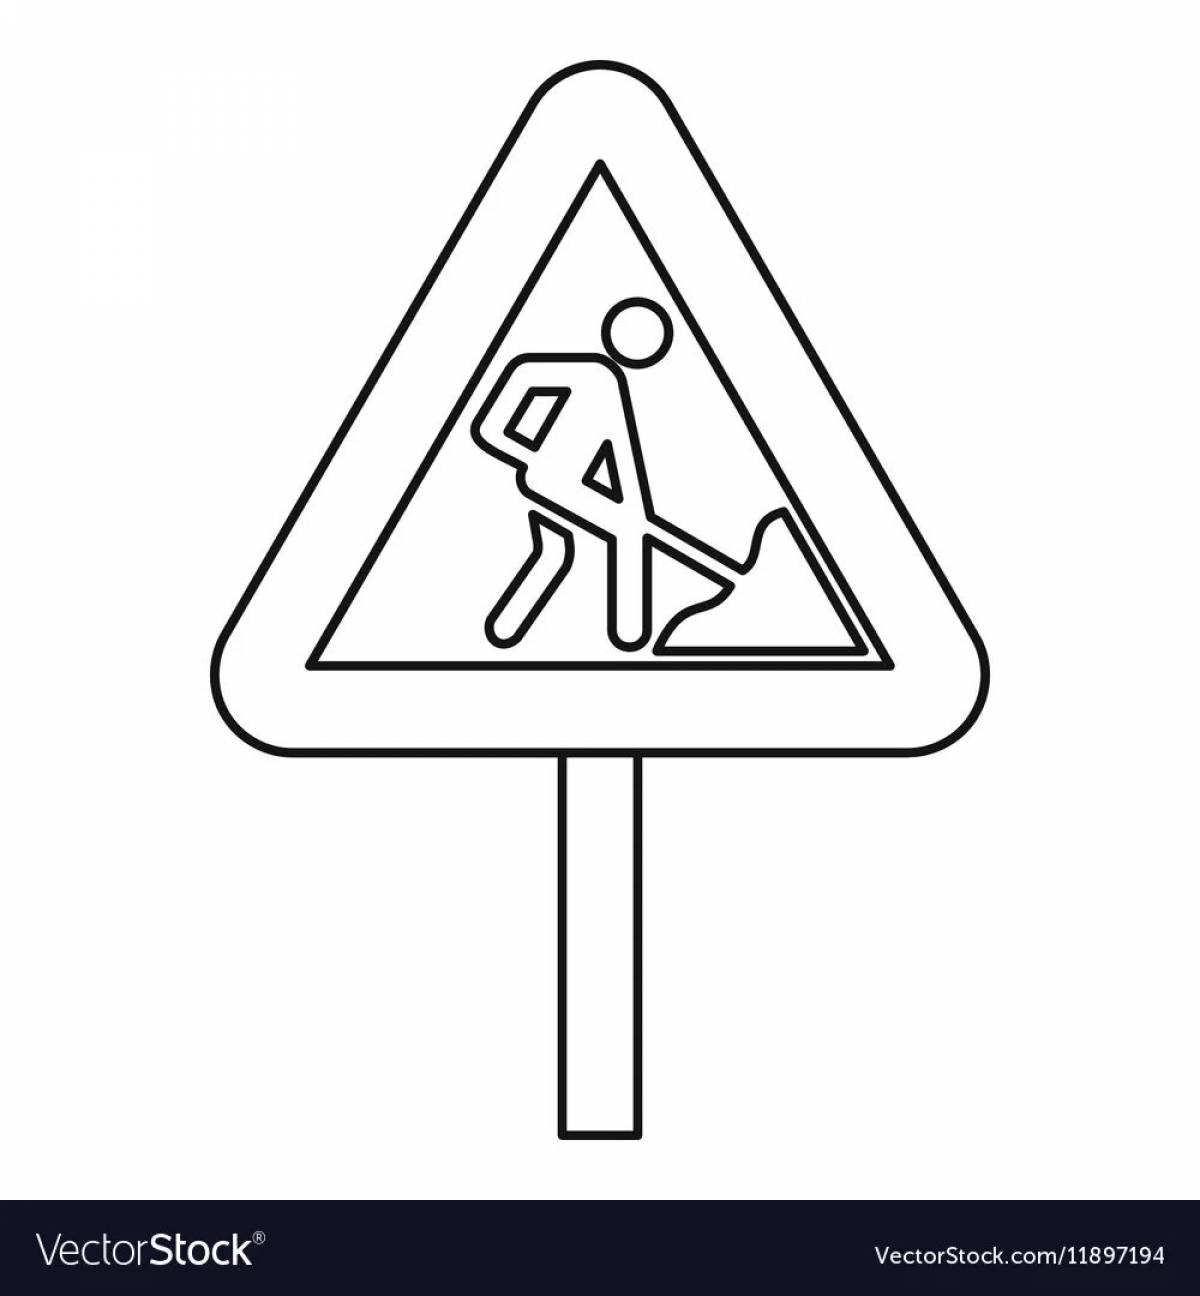 Веселые предупреждающие дорожные знаки для младенцев